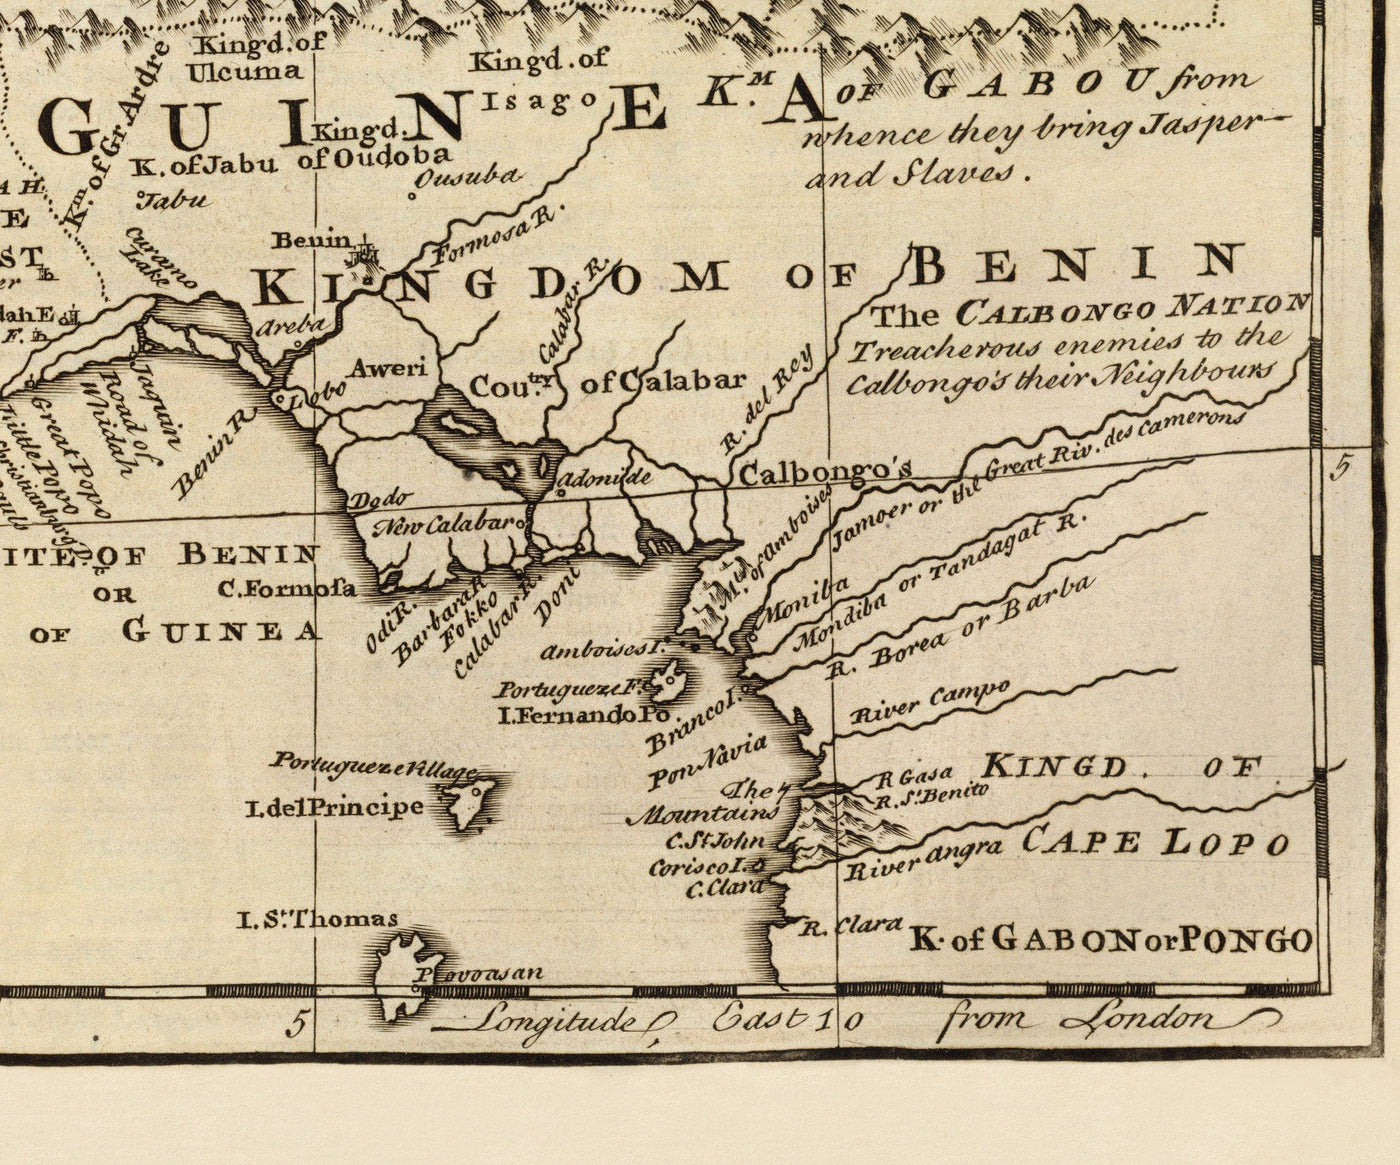 Alte Karte von Negroland, 1747 von Bowen - vorkolonialer Westafrika - Sklavenhandel, Elfenbeinküste, Goldküste